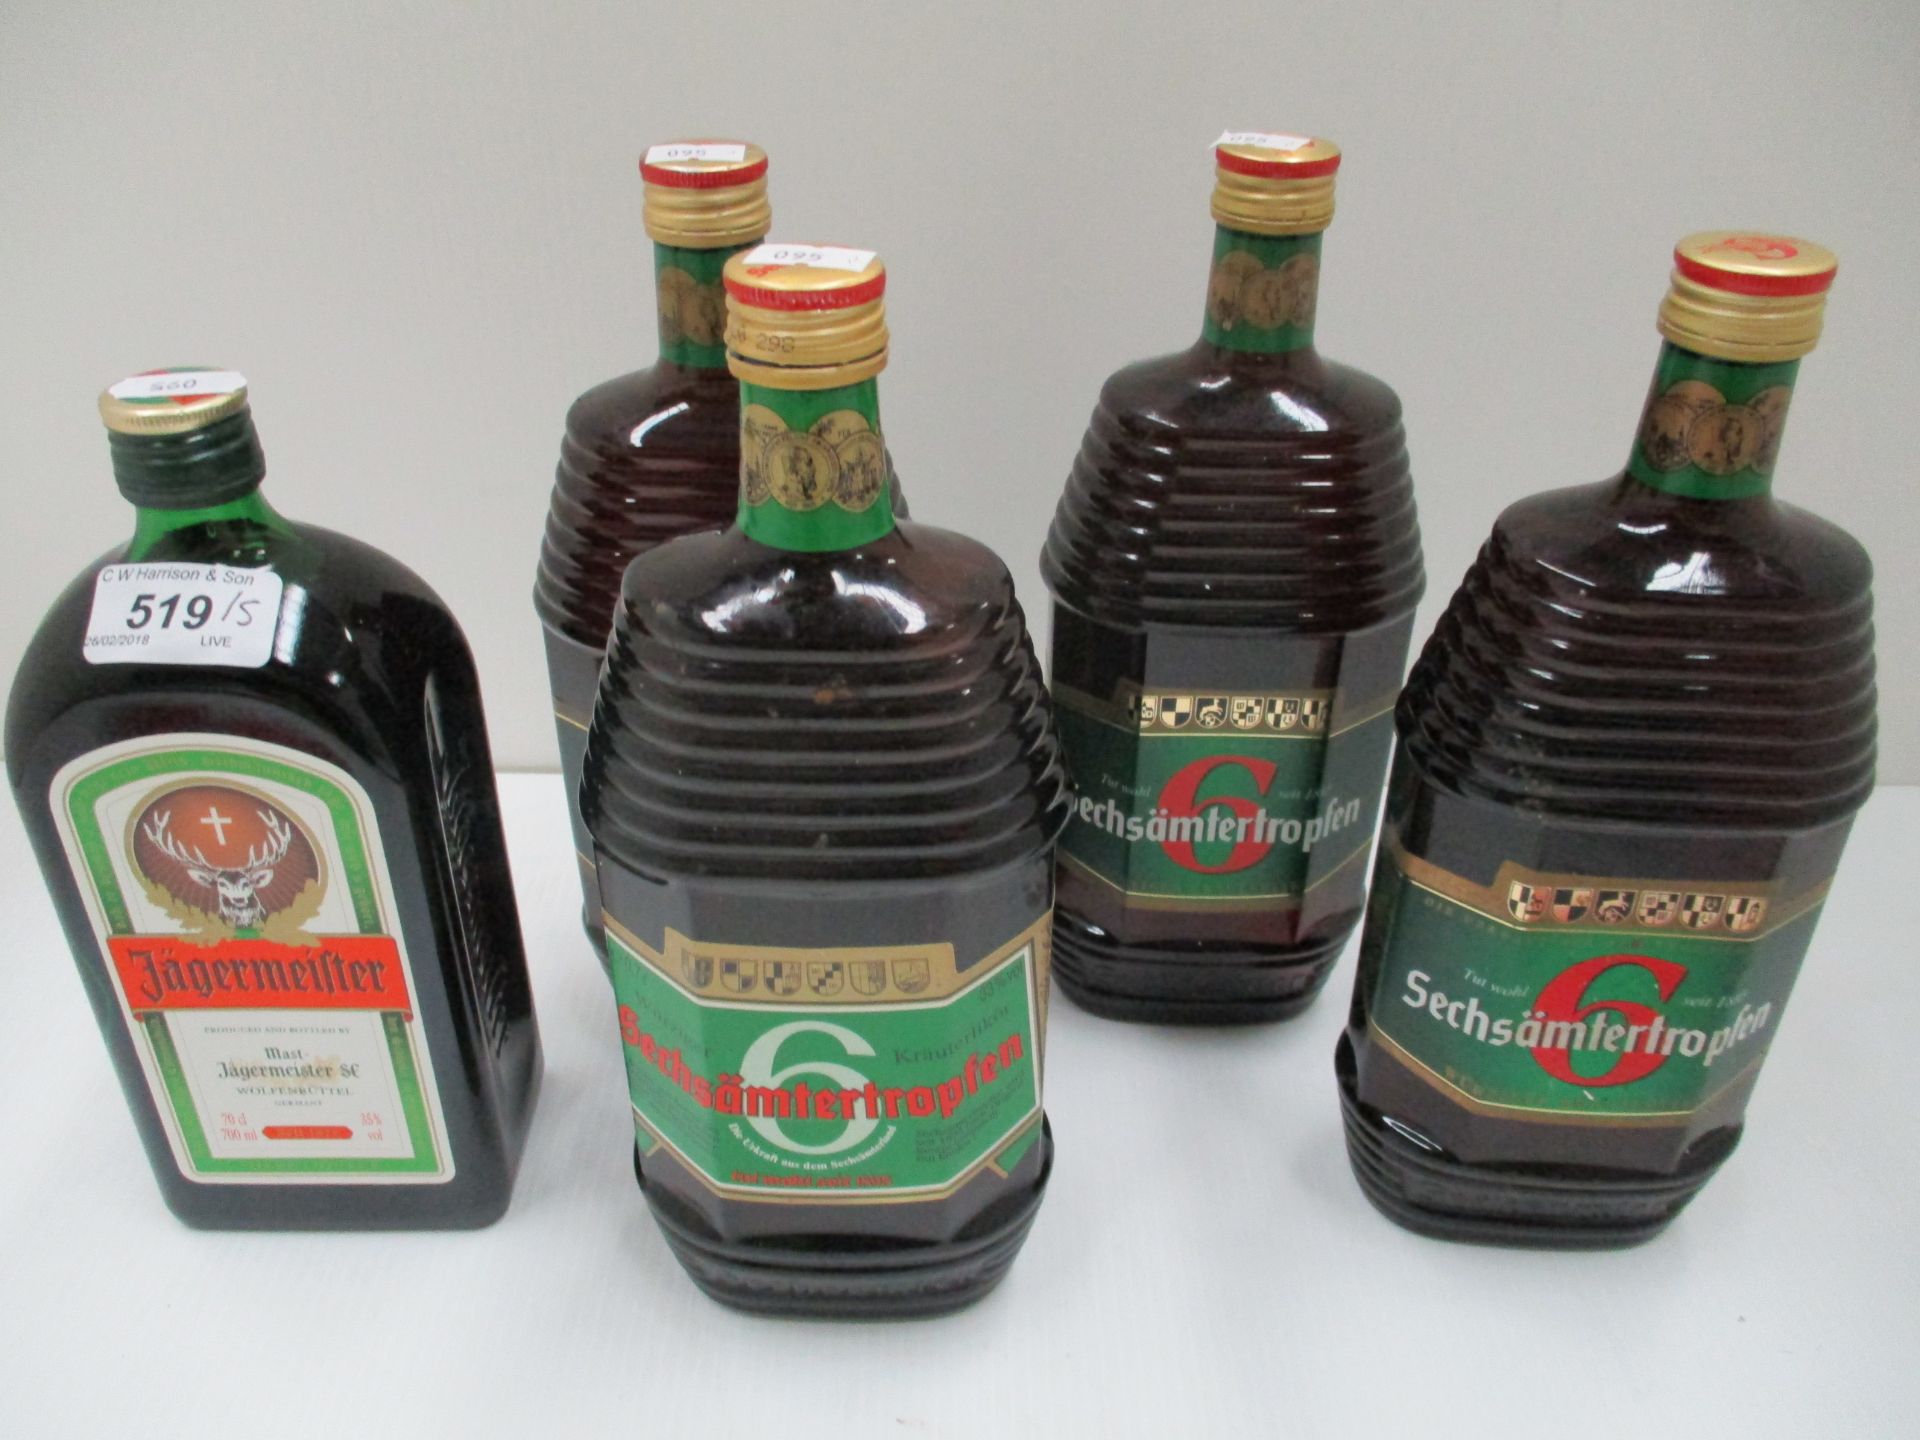 4 x 70cl bottles of Sechsämtertropfen and a 70cl bottle of Jägermeister (5)